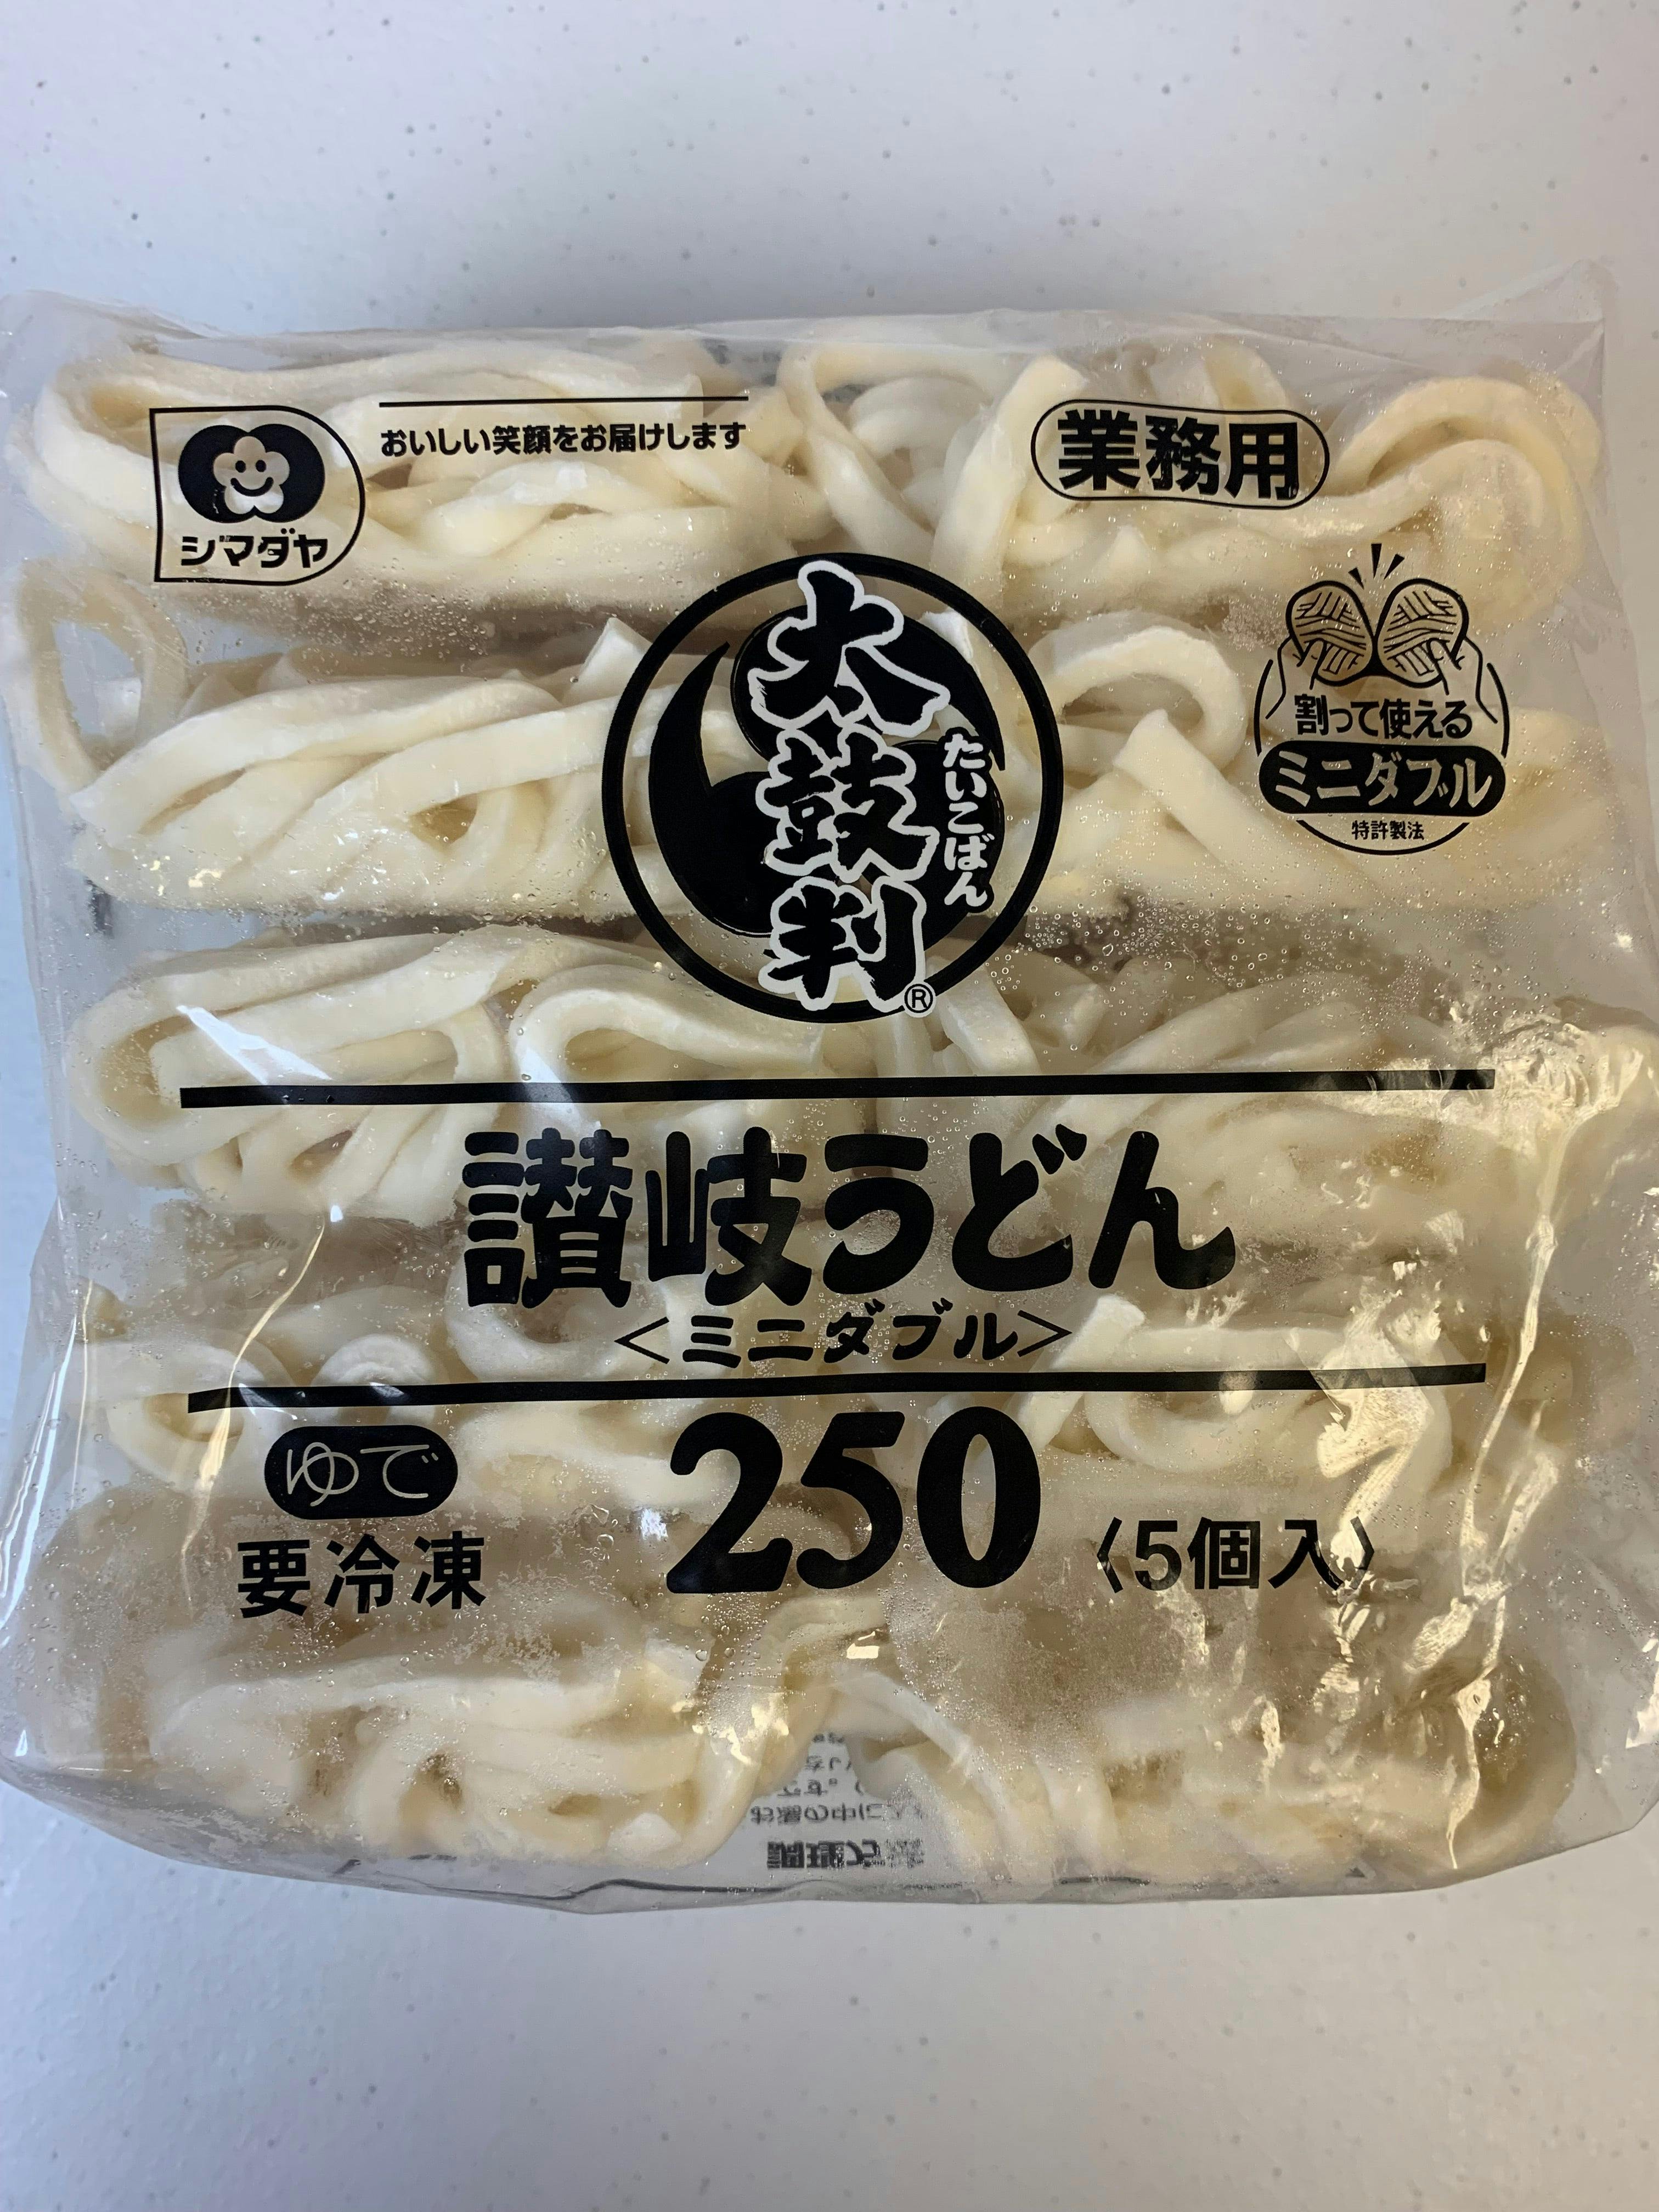 日本 Sanuki udon (讃岐うどん) 乌冬面 Frozen Udon Noodles 1.25kg